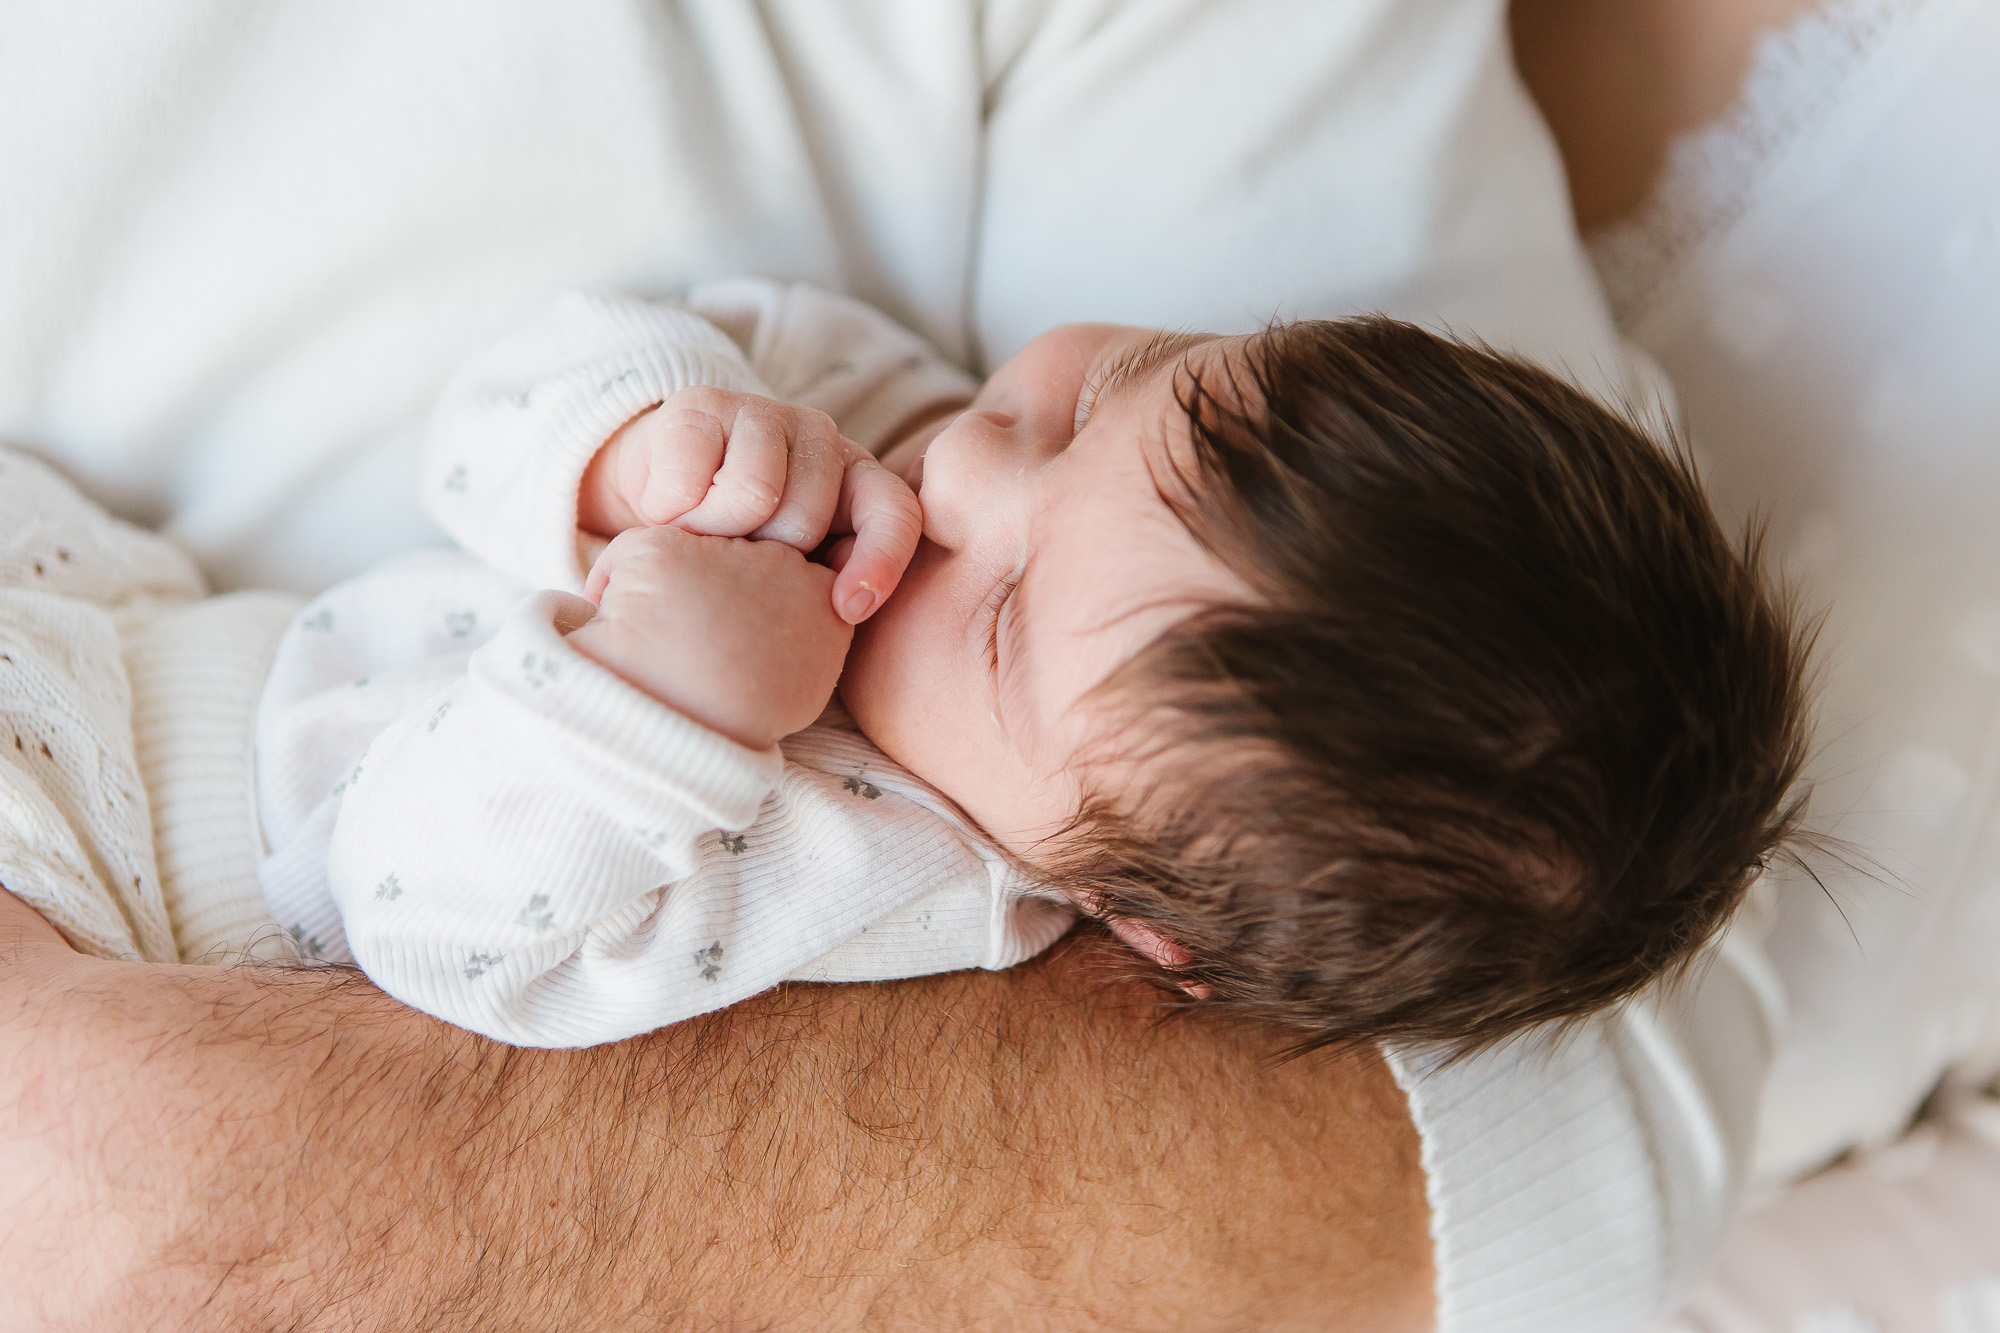 Et si bébé ne dort pas durant sa séance photo ?